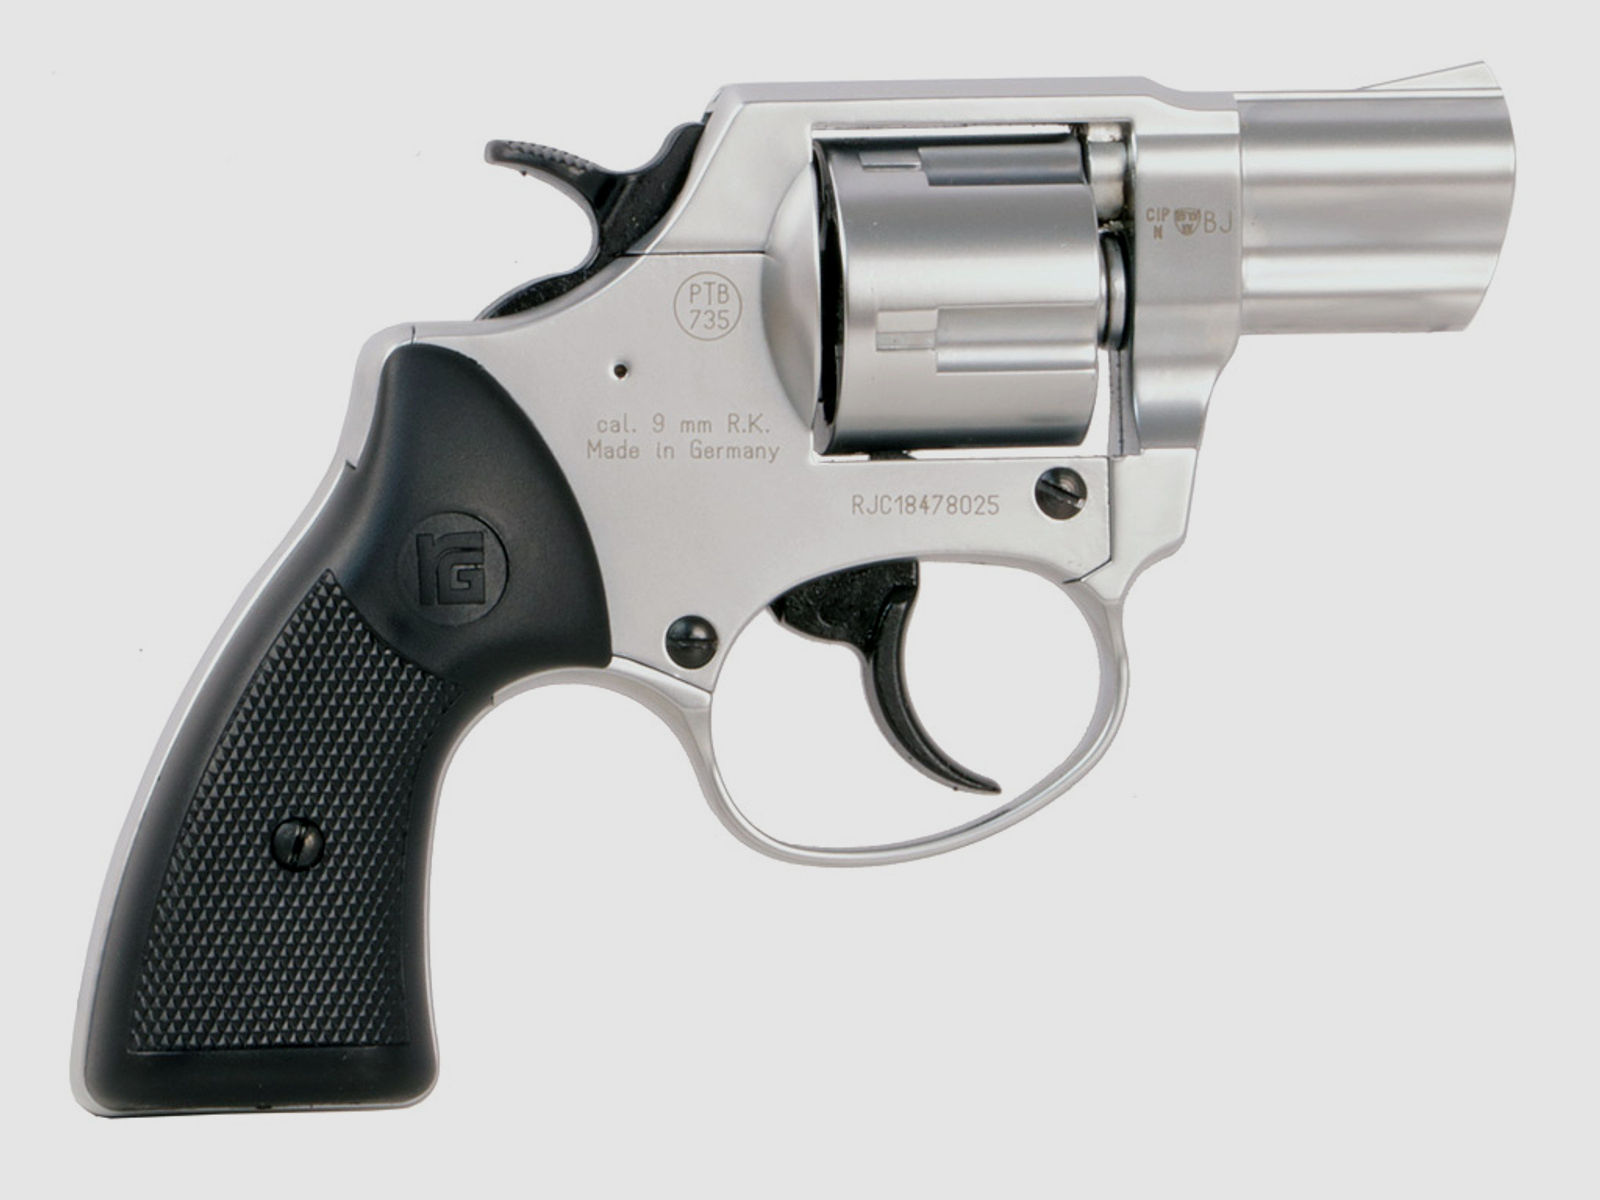 Schreckschuss Revolver RĂ¶hm RG 59 Alu Chrome Kaliber 9 mm R.K. (P18)